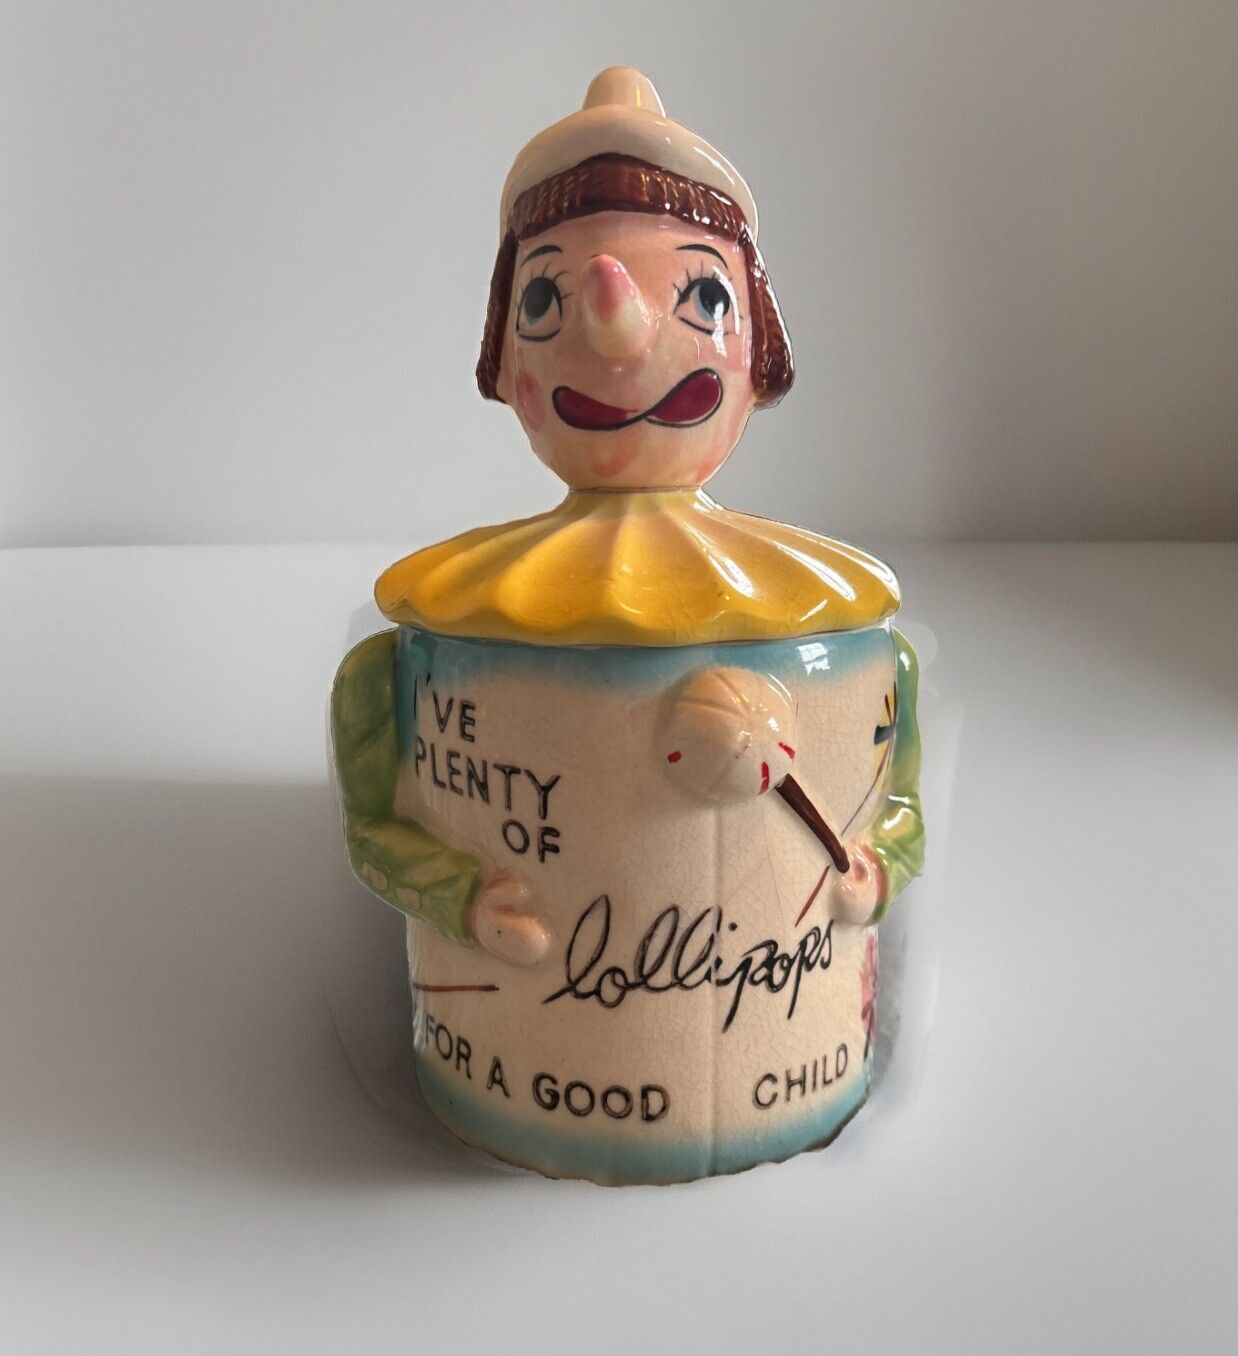 DAVAR Lollipop Jar “I've Plenty of Lollipops For A Good Child” 1950 VTG Read Des